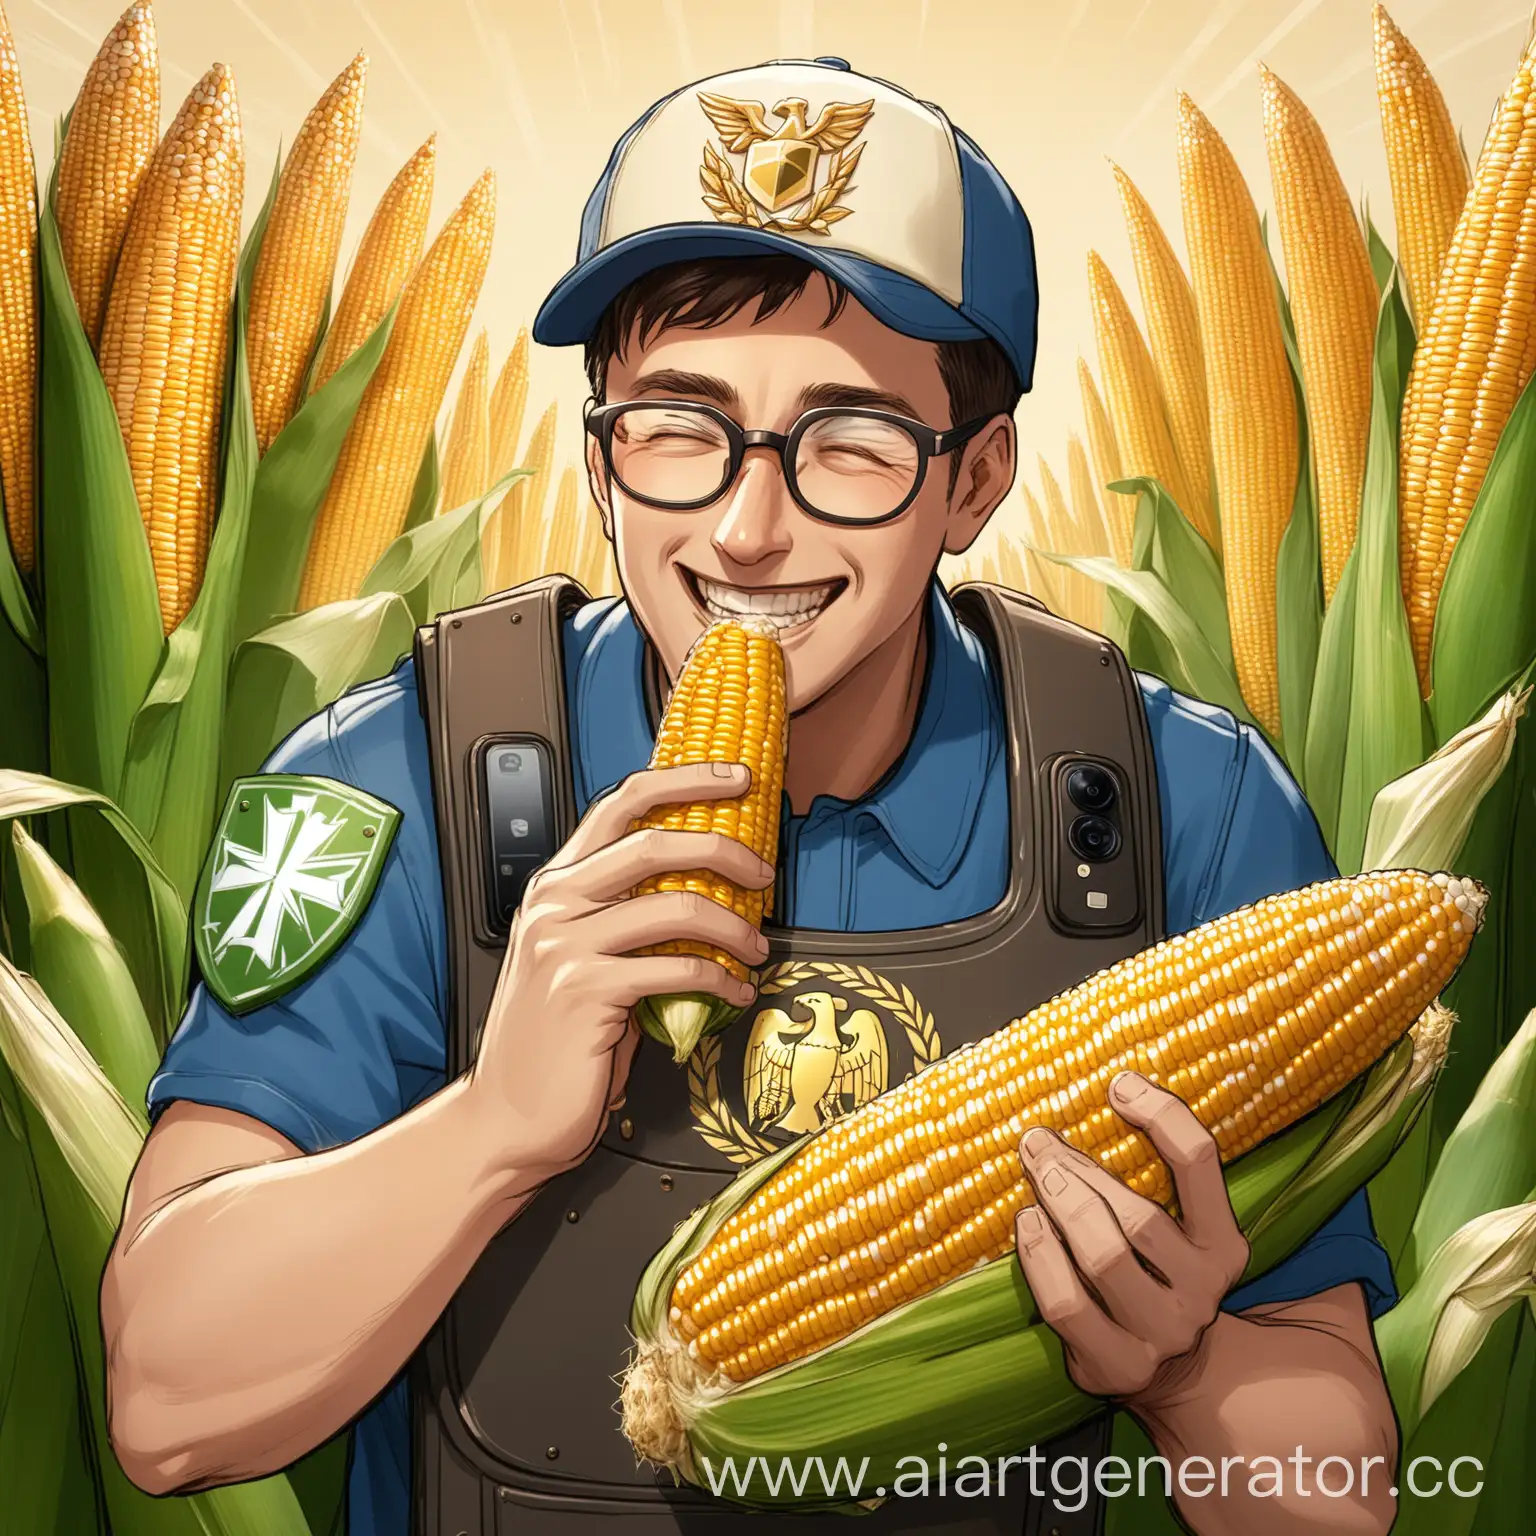 мужчина в очках, правой рукой откусывает кукурузу, левой рукой держит телефон, смотрит на телефон очень радостный, на нем кепка с эмблемой щита